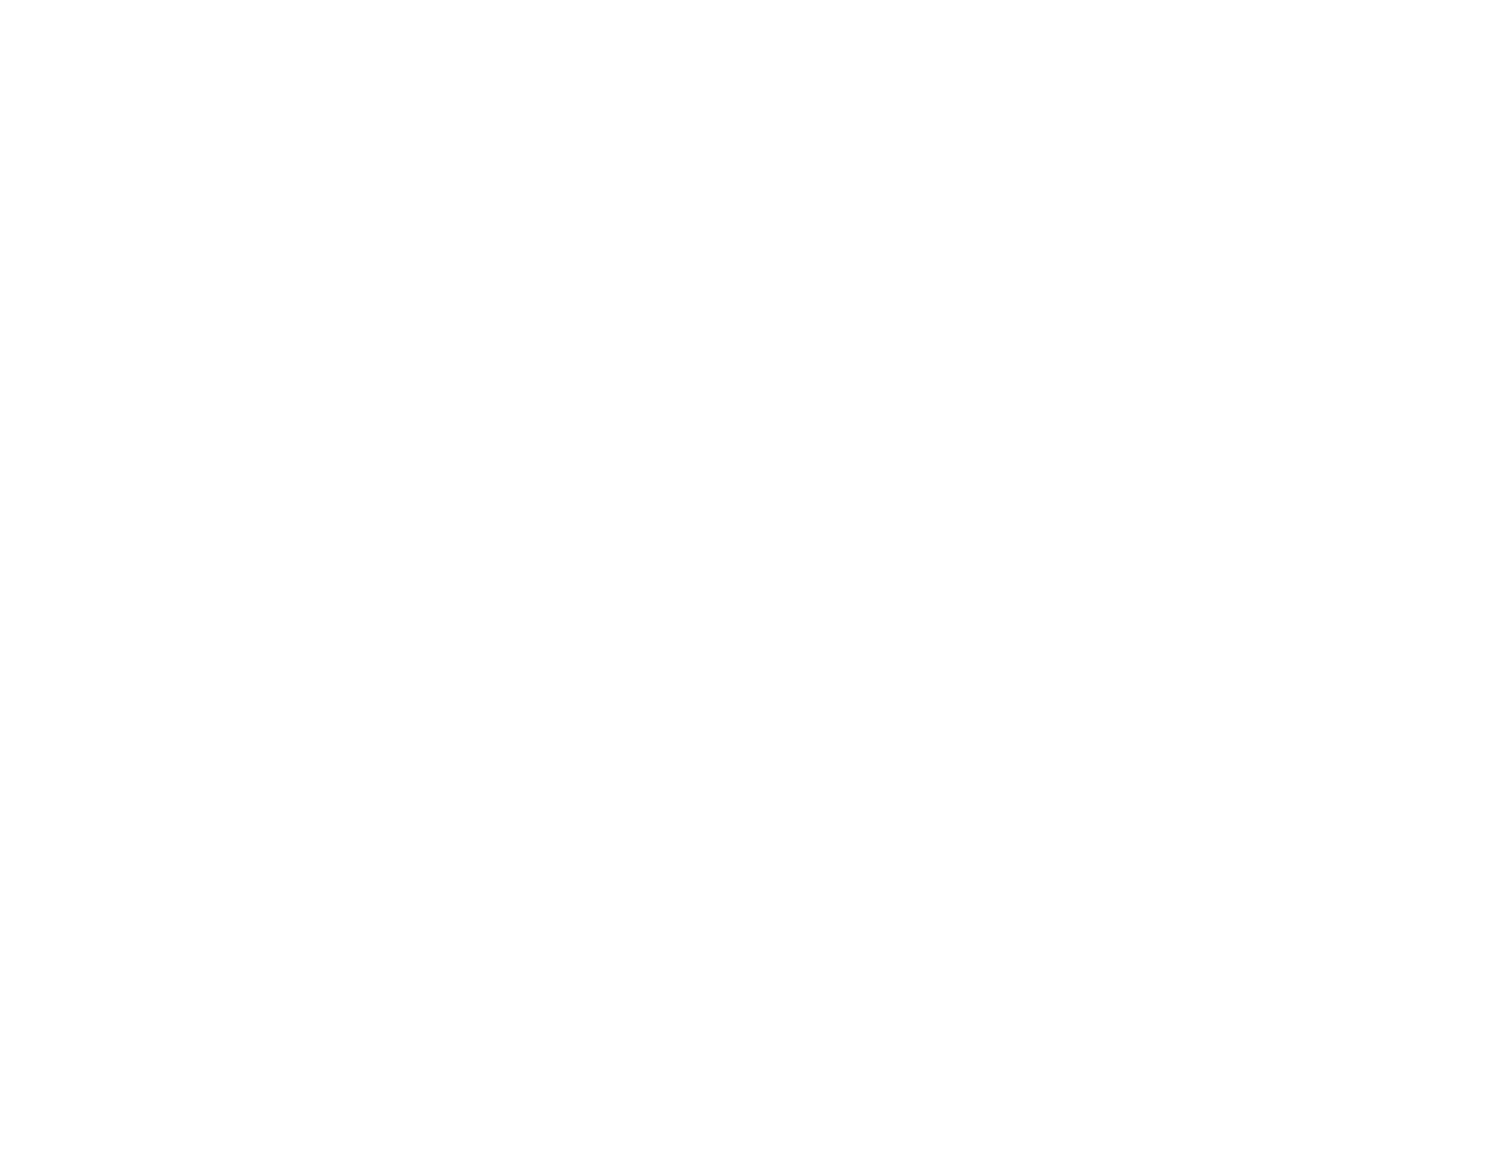 LOOP METHOD